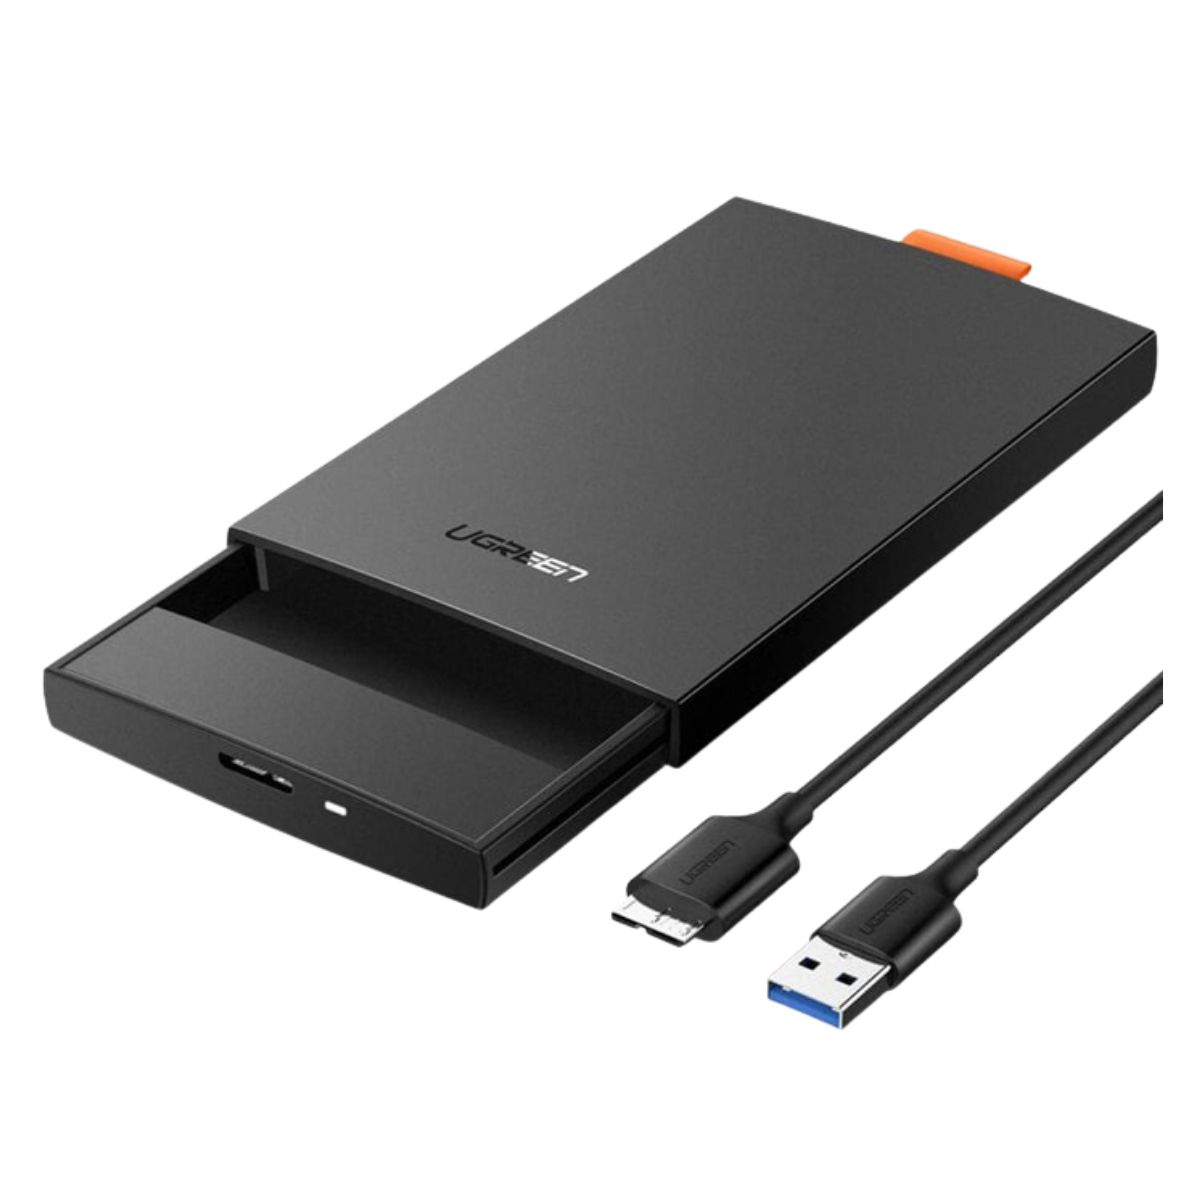  Hộp ổ cứng SATA 2.5inch USB 3.0 Ugreen 60353 CM237 màu đen, chiều dài cáp 50cm